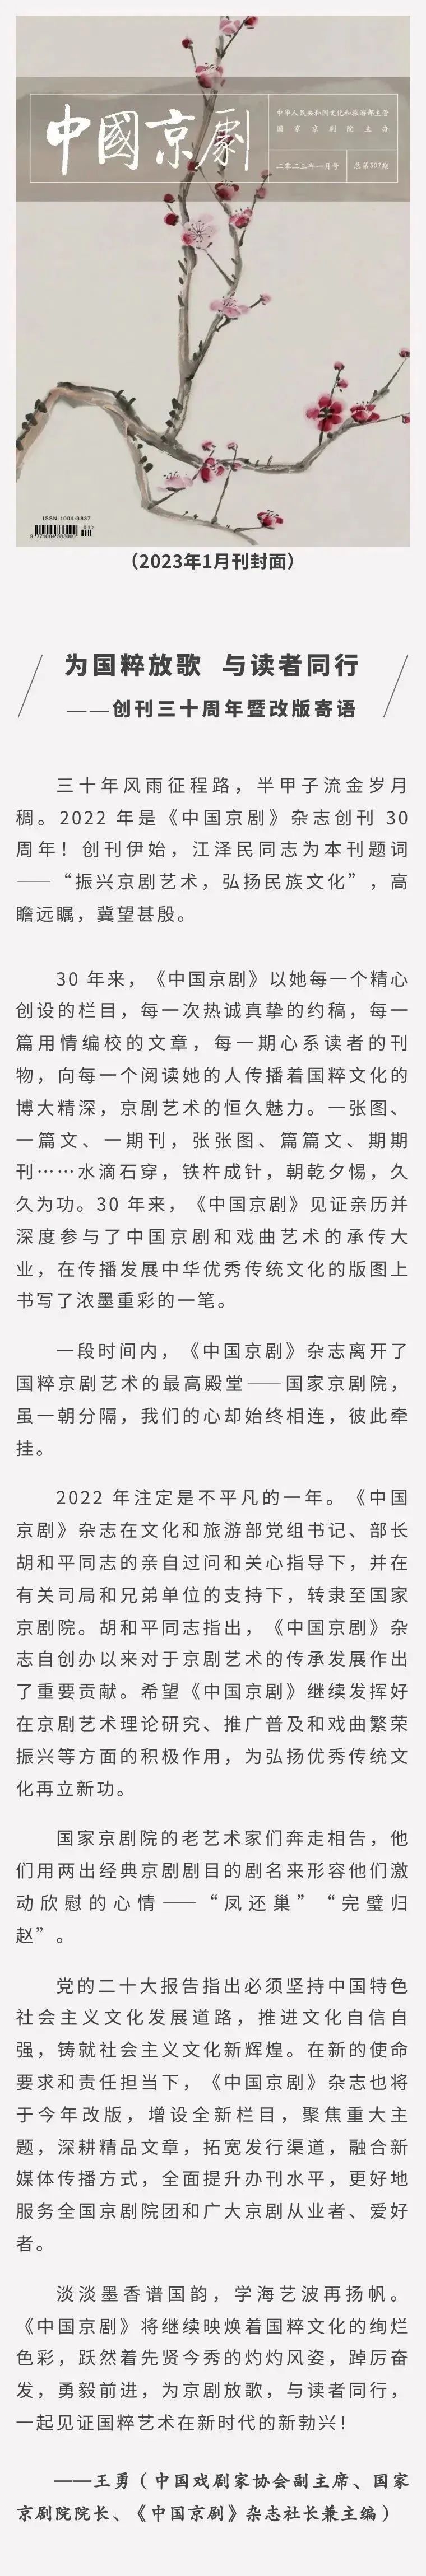 《中国京剧》杂志创刊三十周年暨改版社长寄语